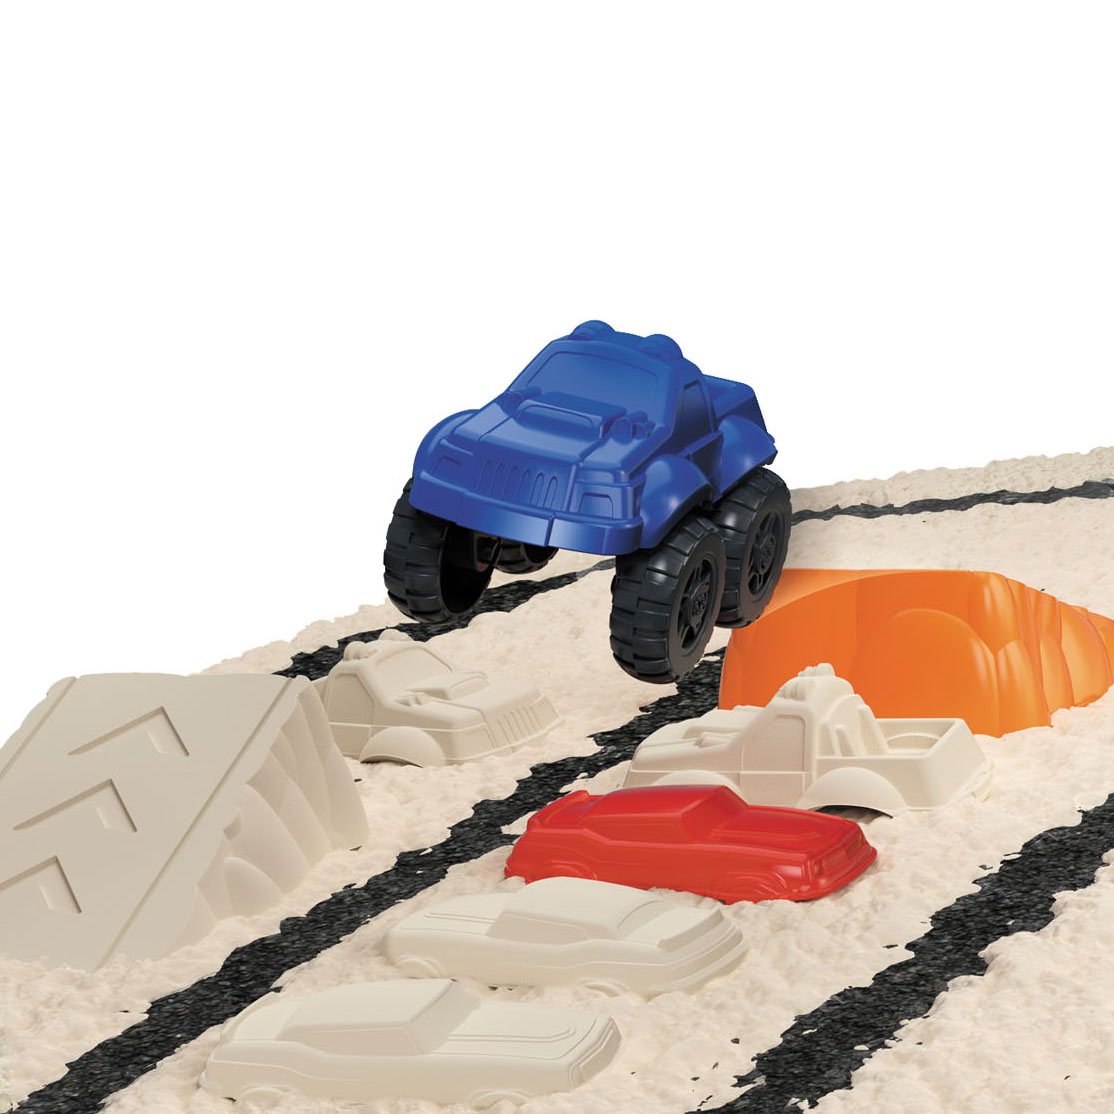 Super Sand Monster Truck